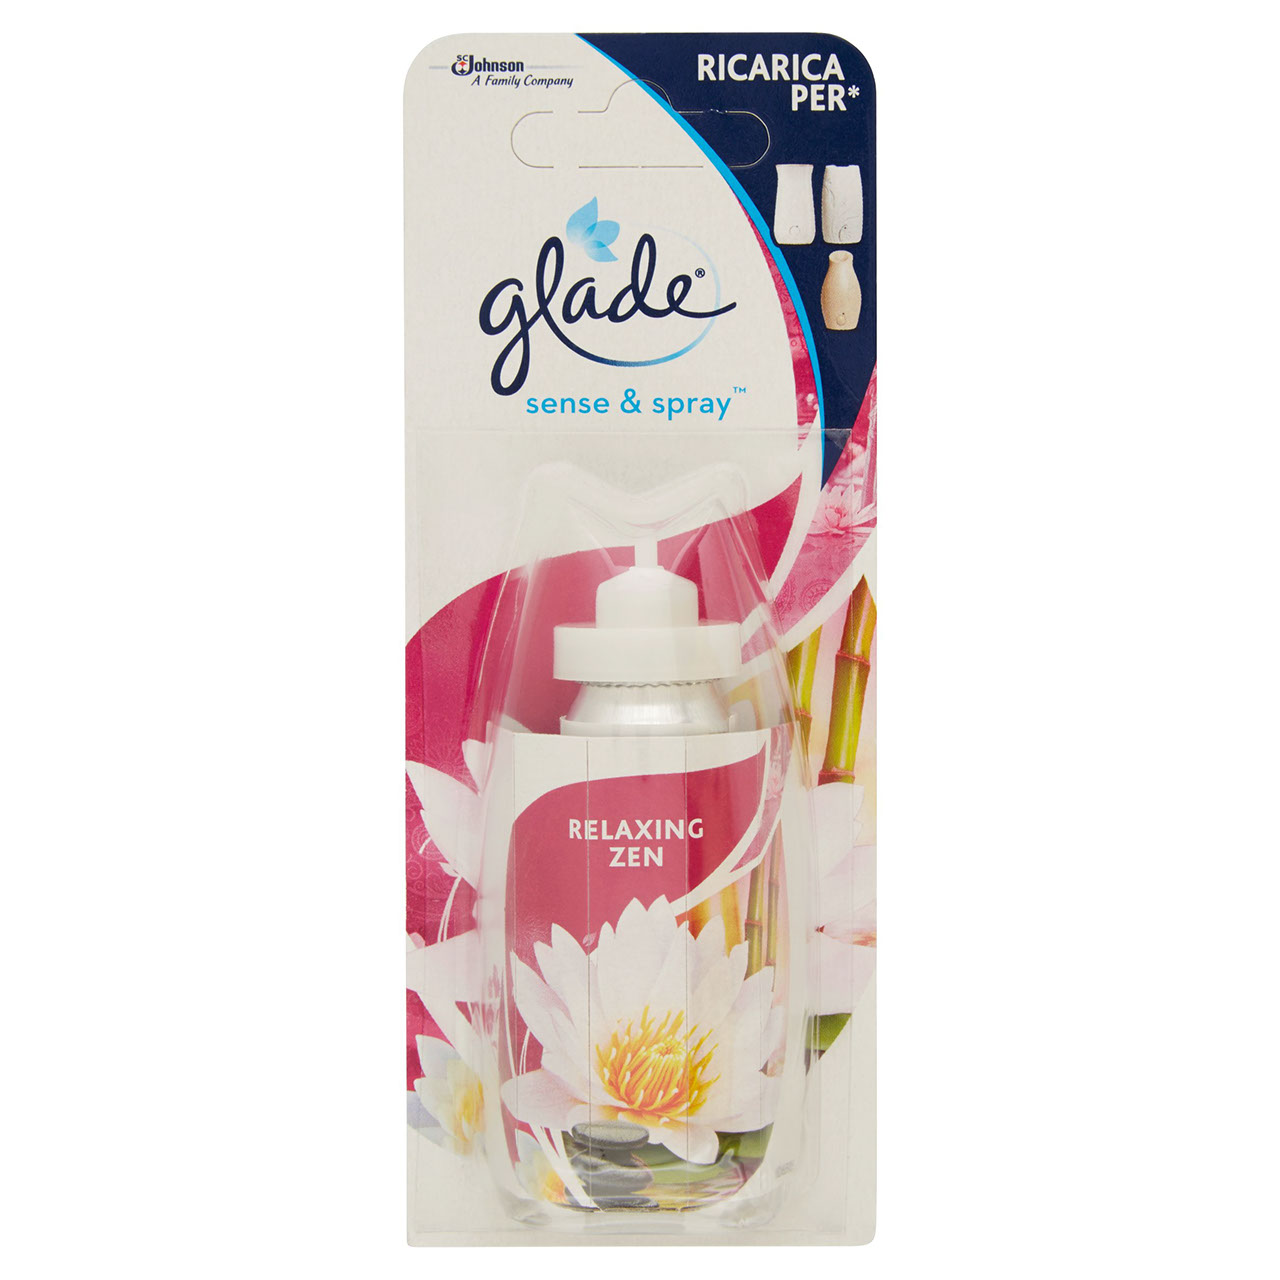 Glade - Sense & Spray, 18 ml, Fragranze Assortite 